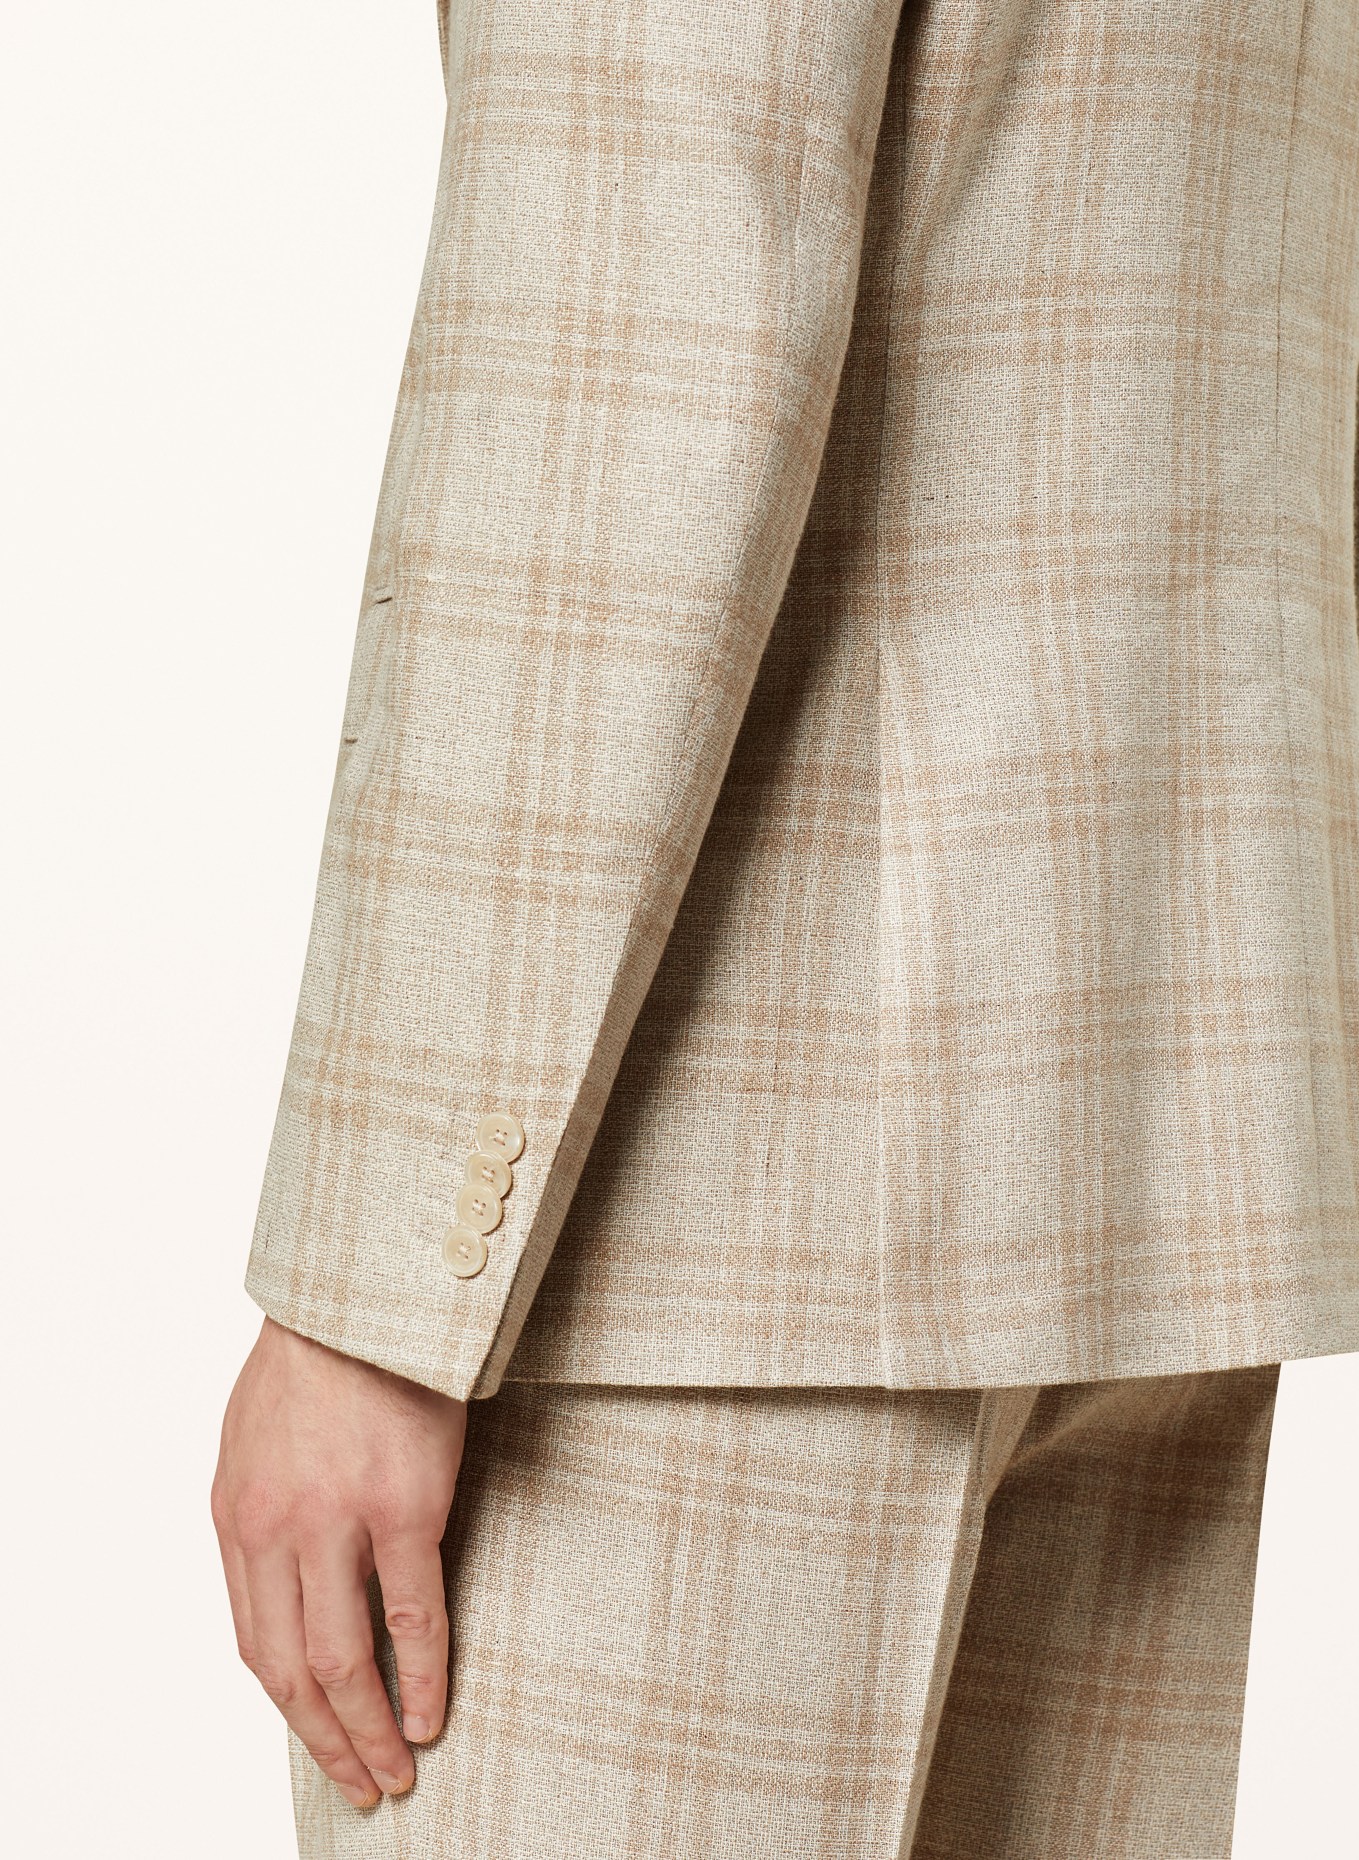 BALDESSARINI Suit jacket SERANO slim fit, Color: 8620 Irish Cream Check (Image 6)